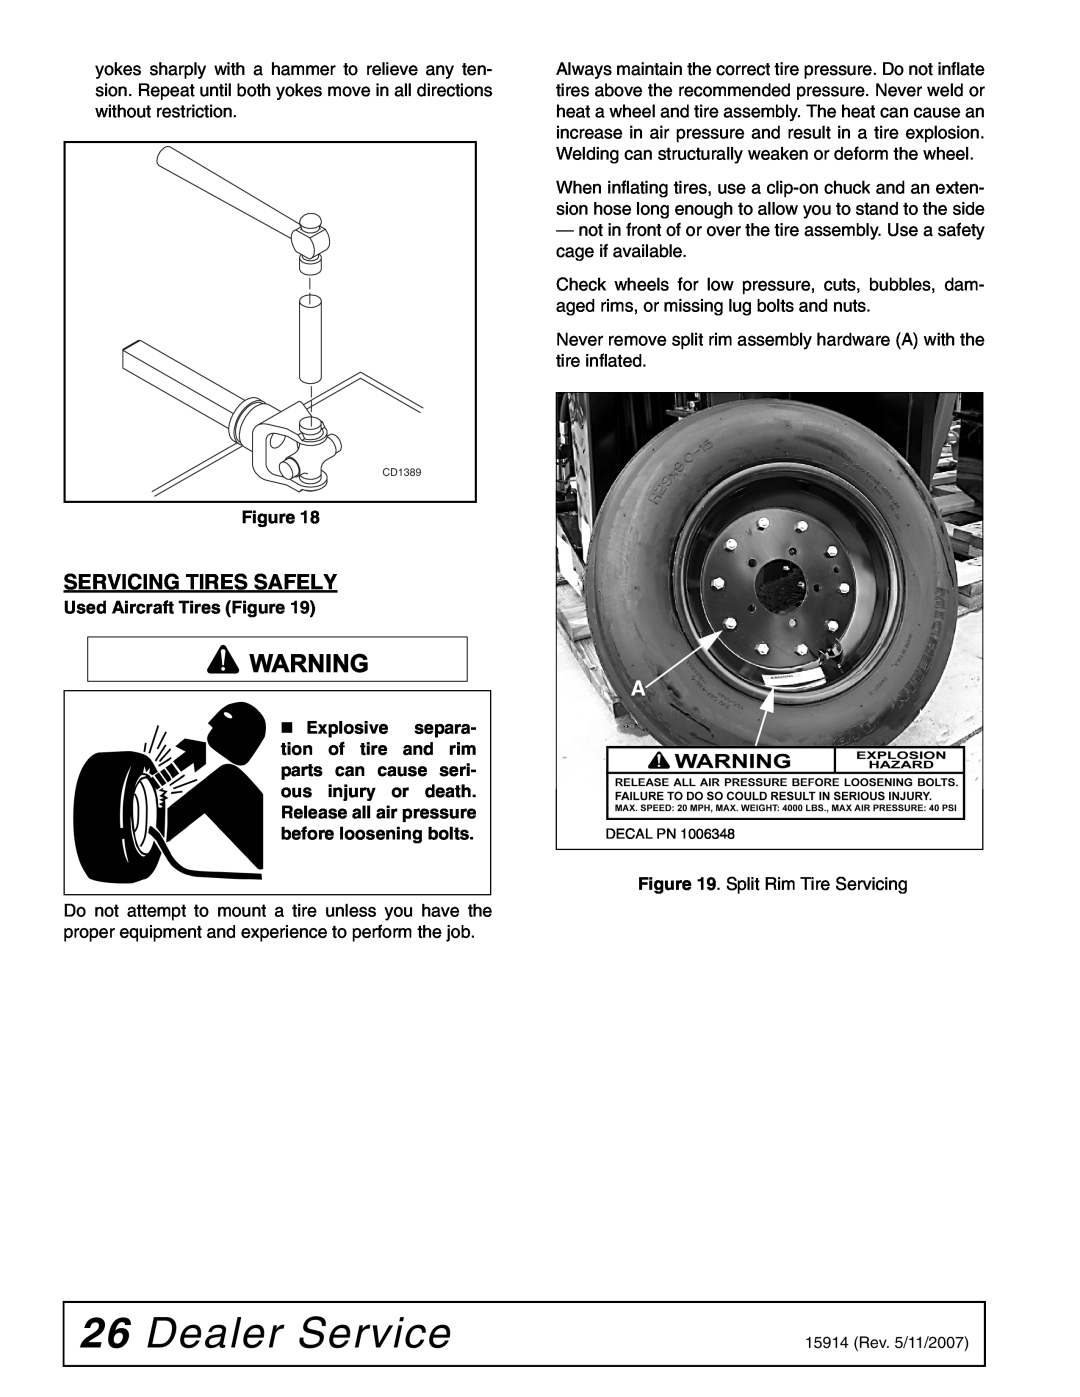 Woods Equipment MD80-2 manual Dealer Service, Servicing Tires Safely 